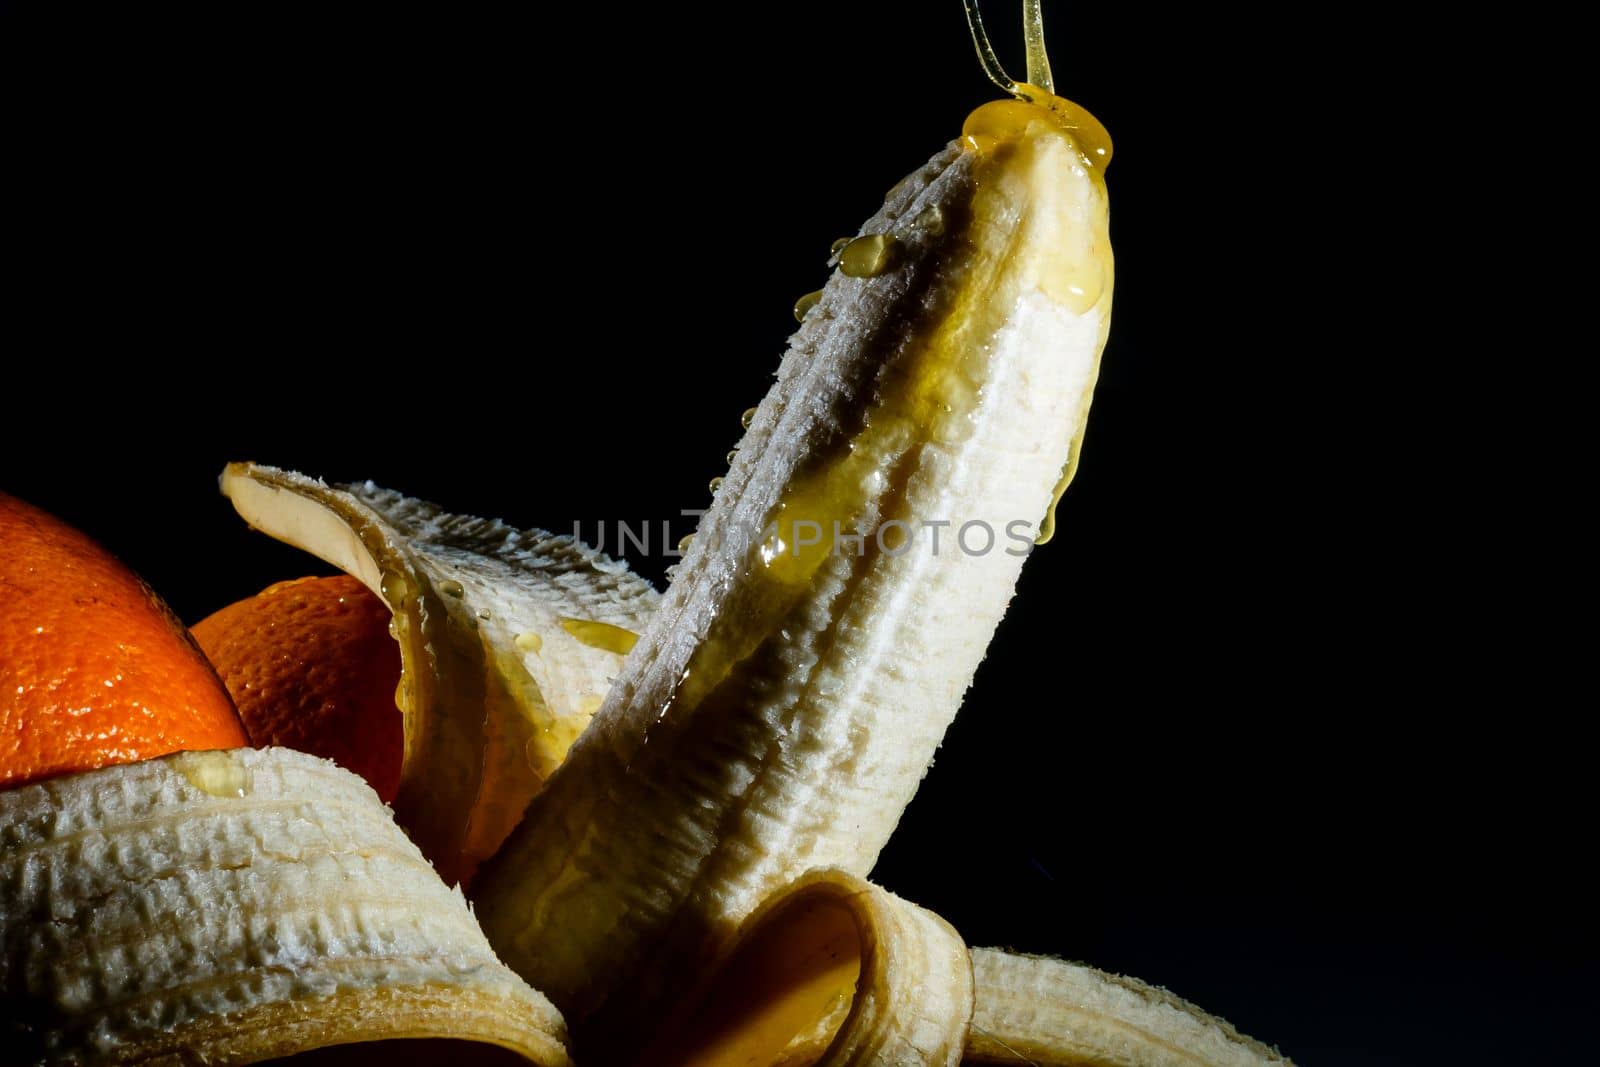 Close-up eating peeled banana